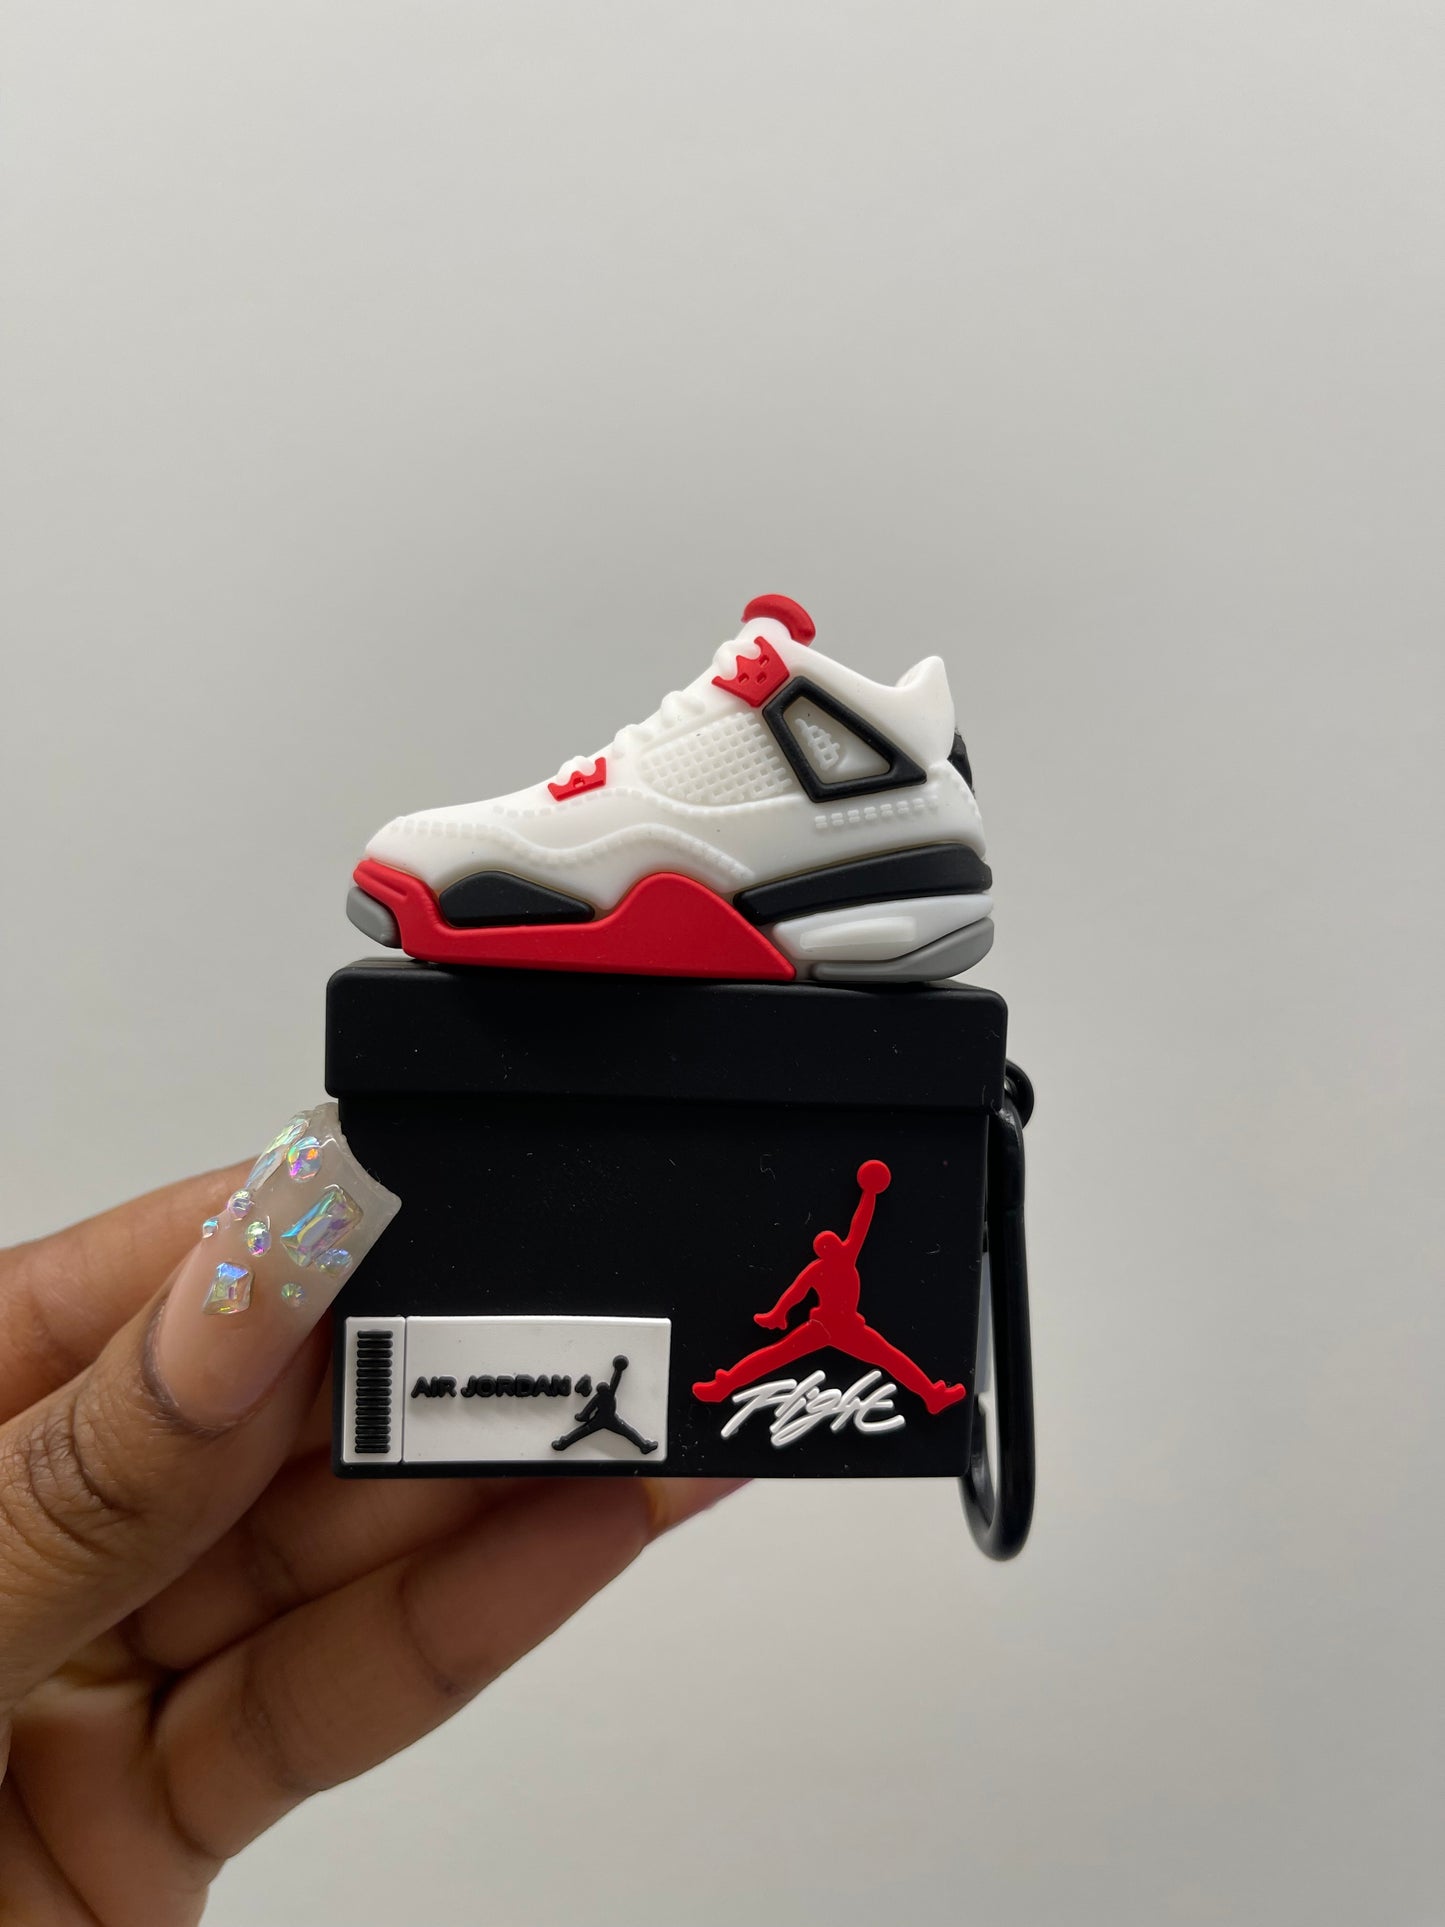 Sneaker case